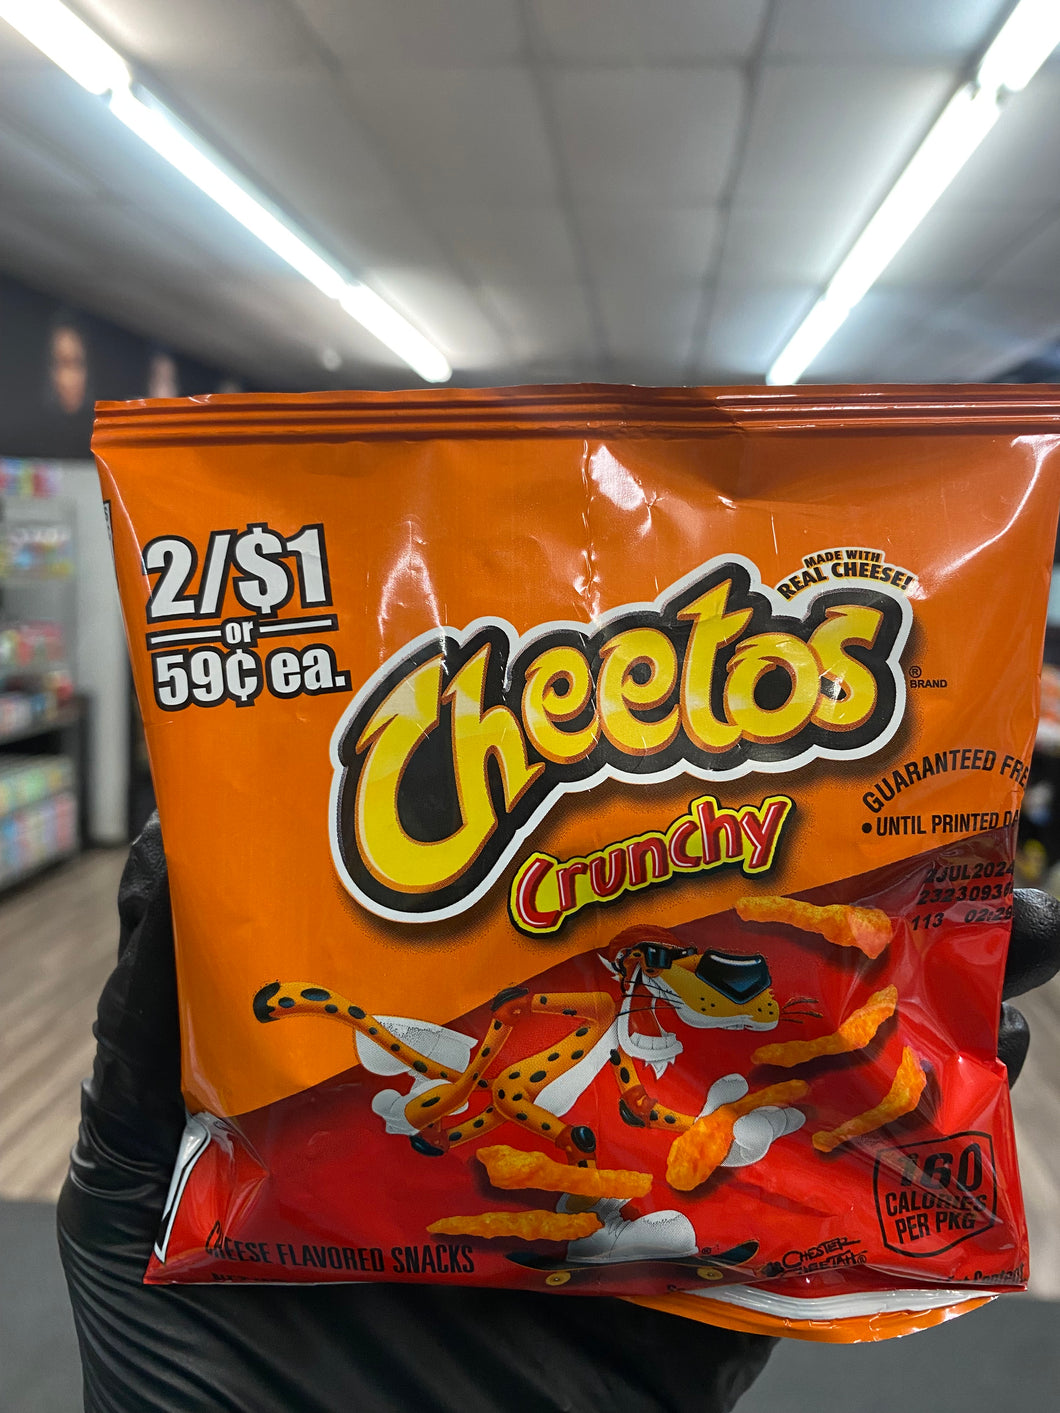 Cheetos Crunchy(USA)